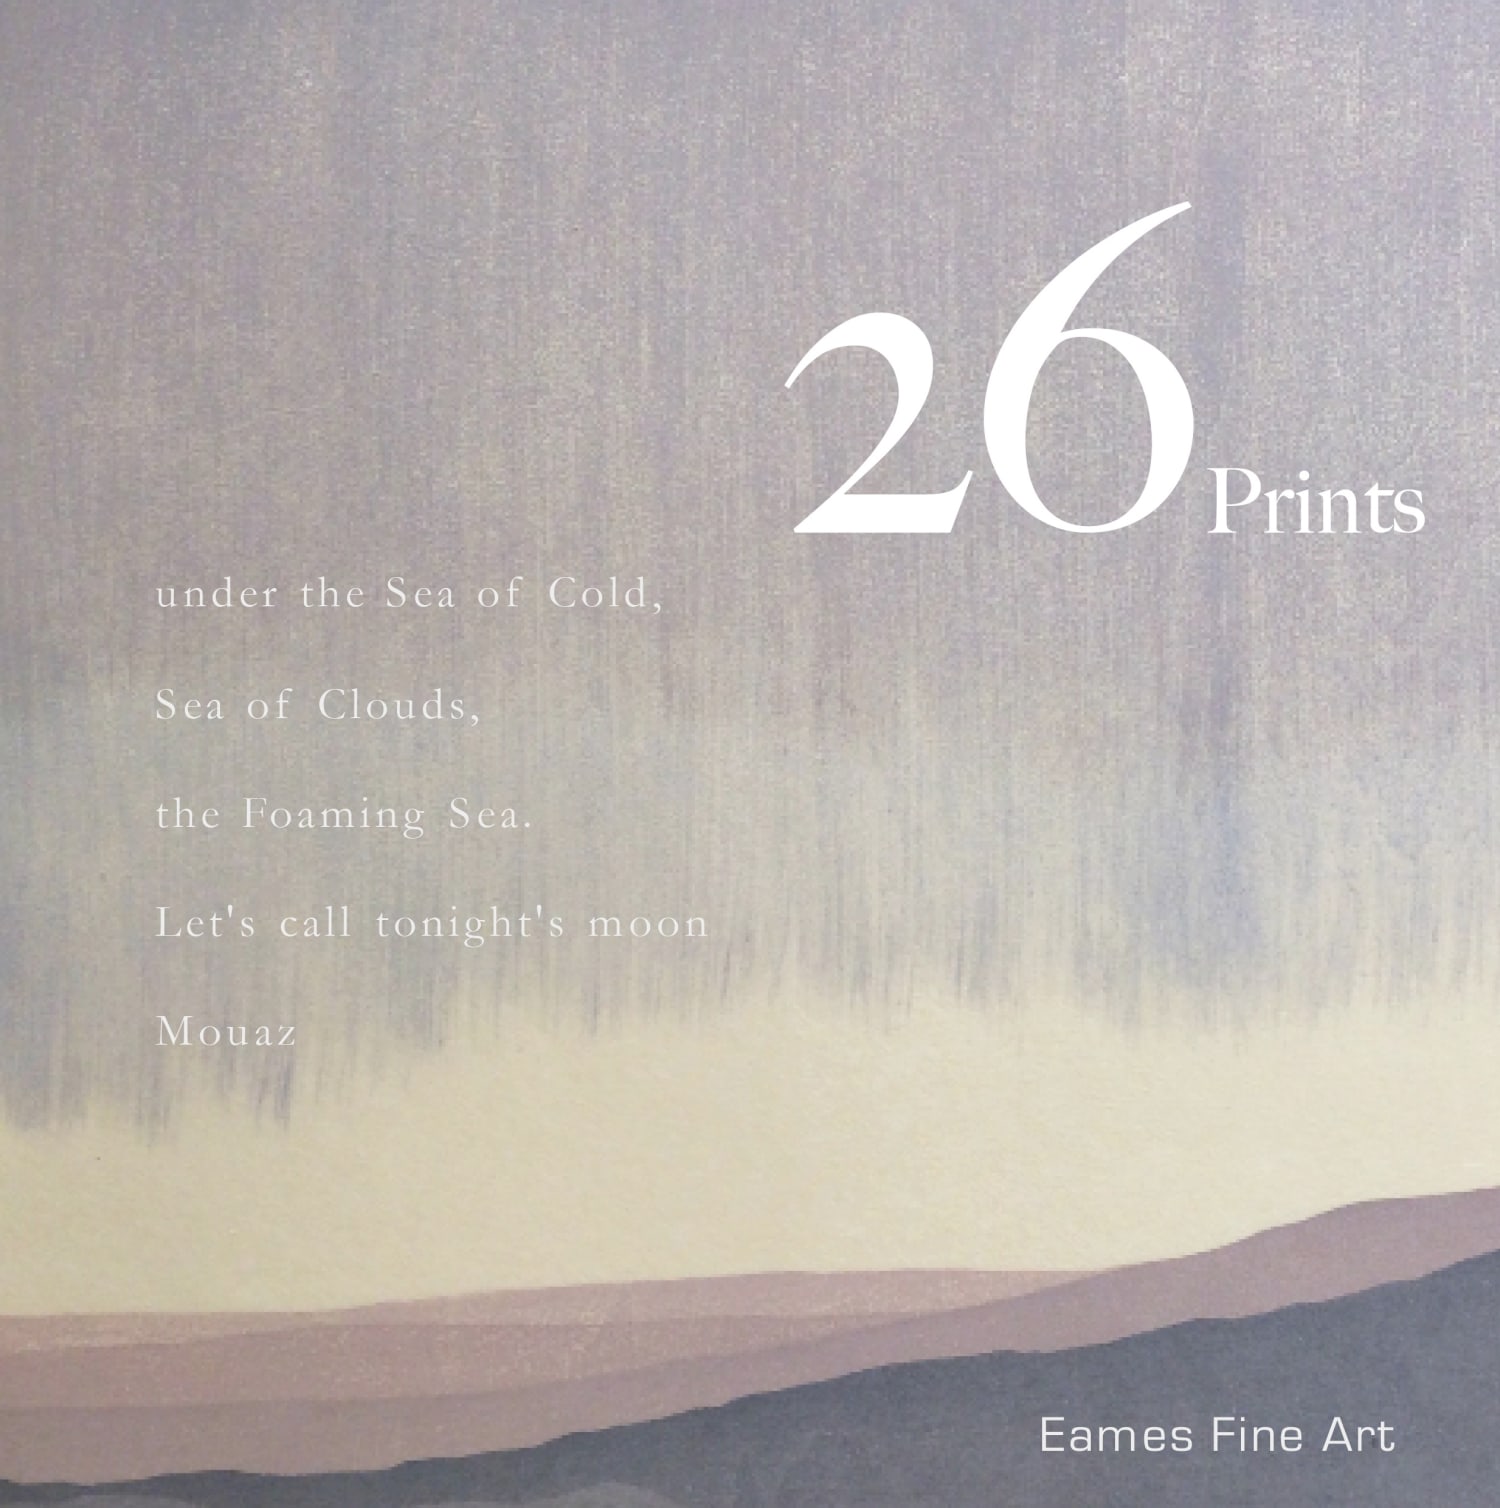 26 Prints